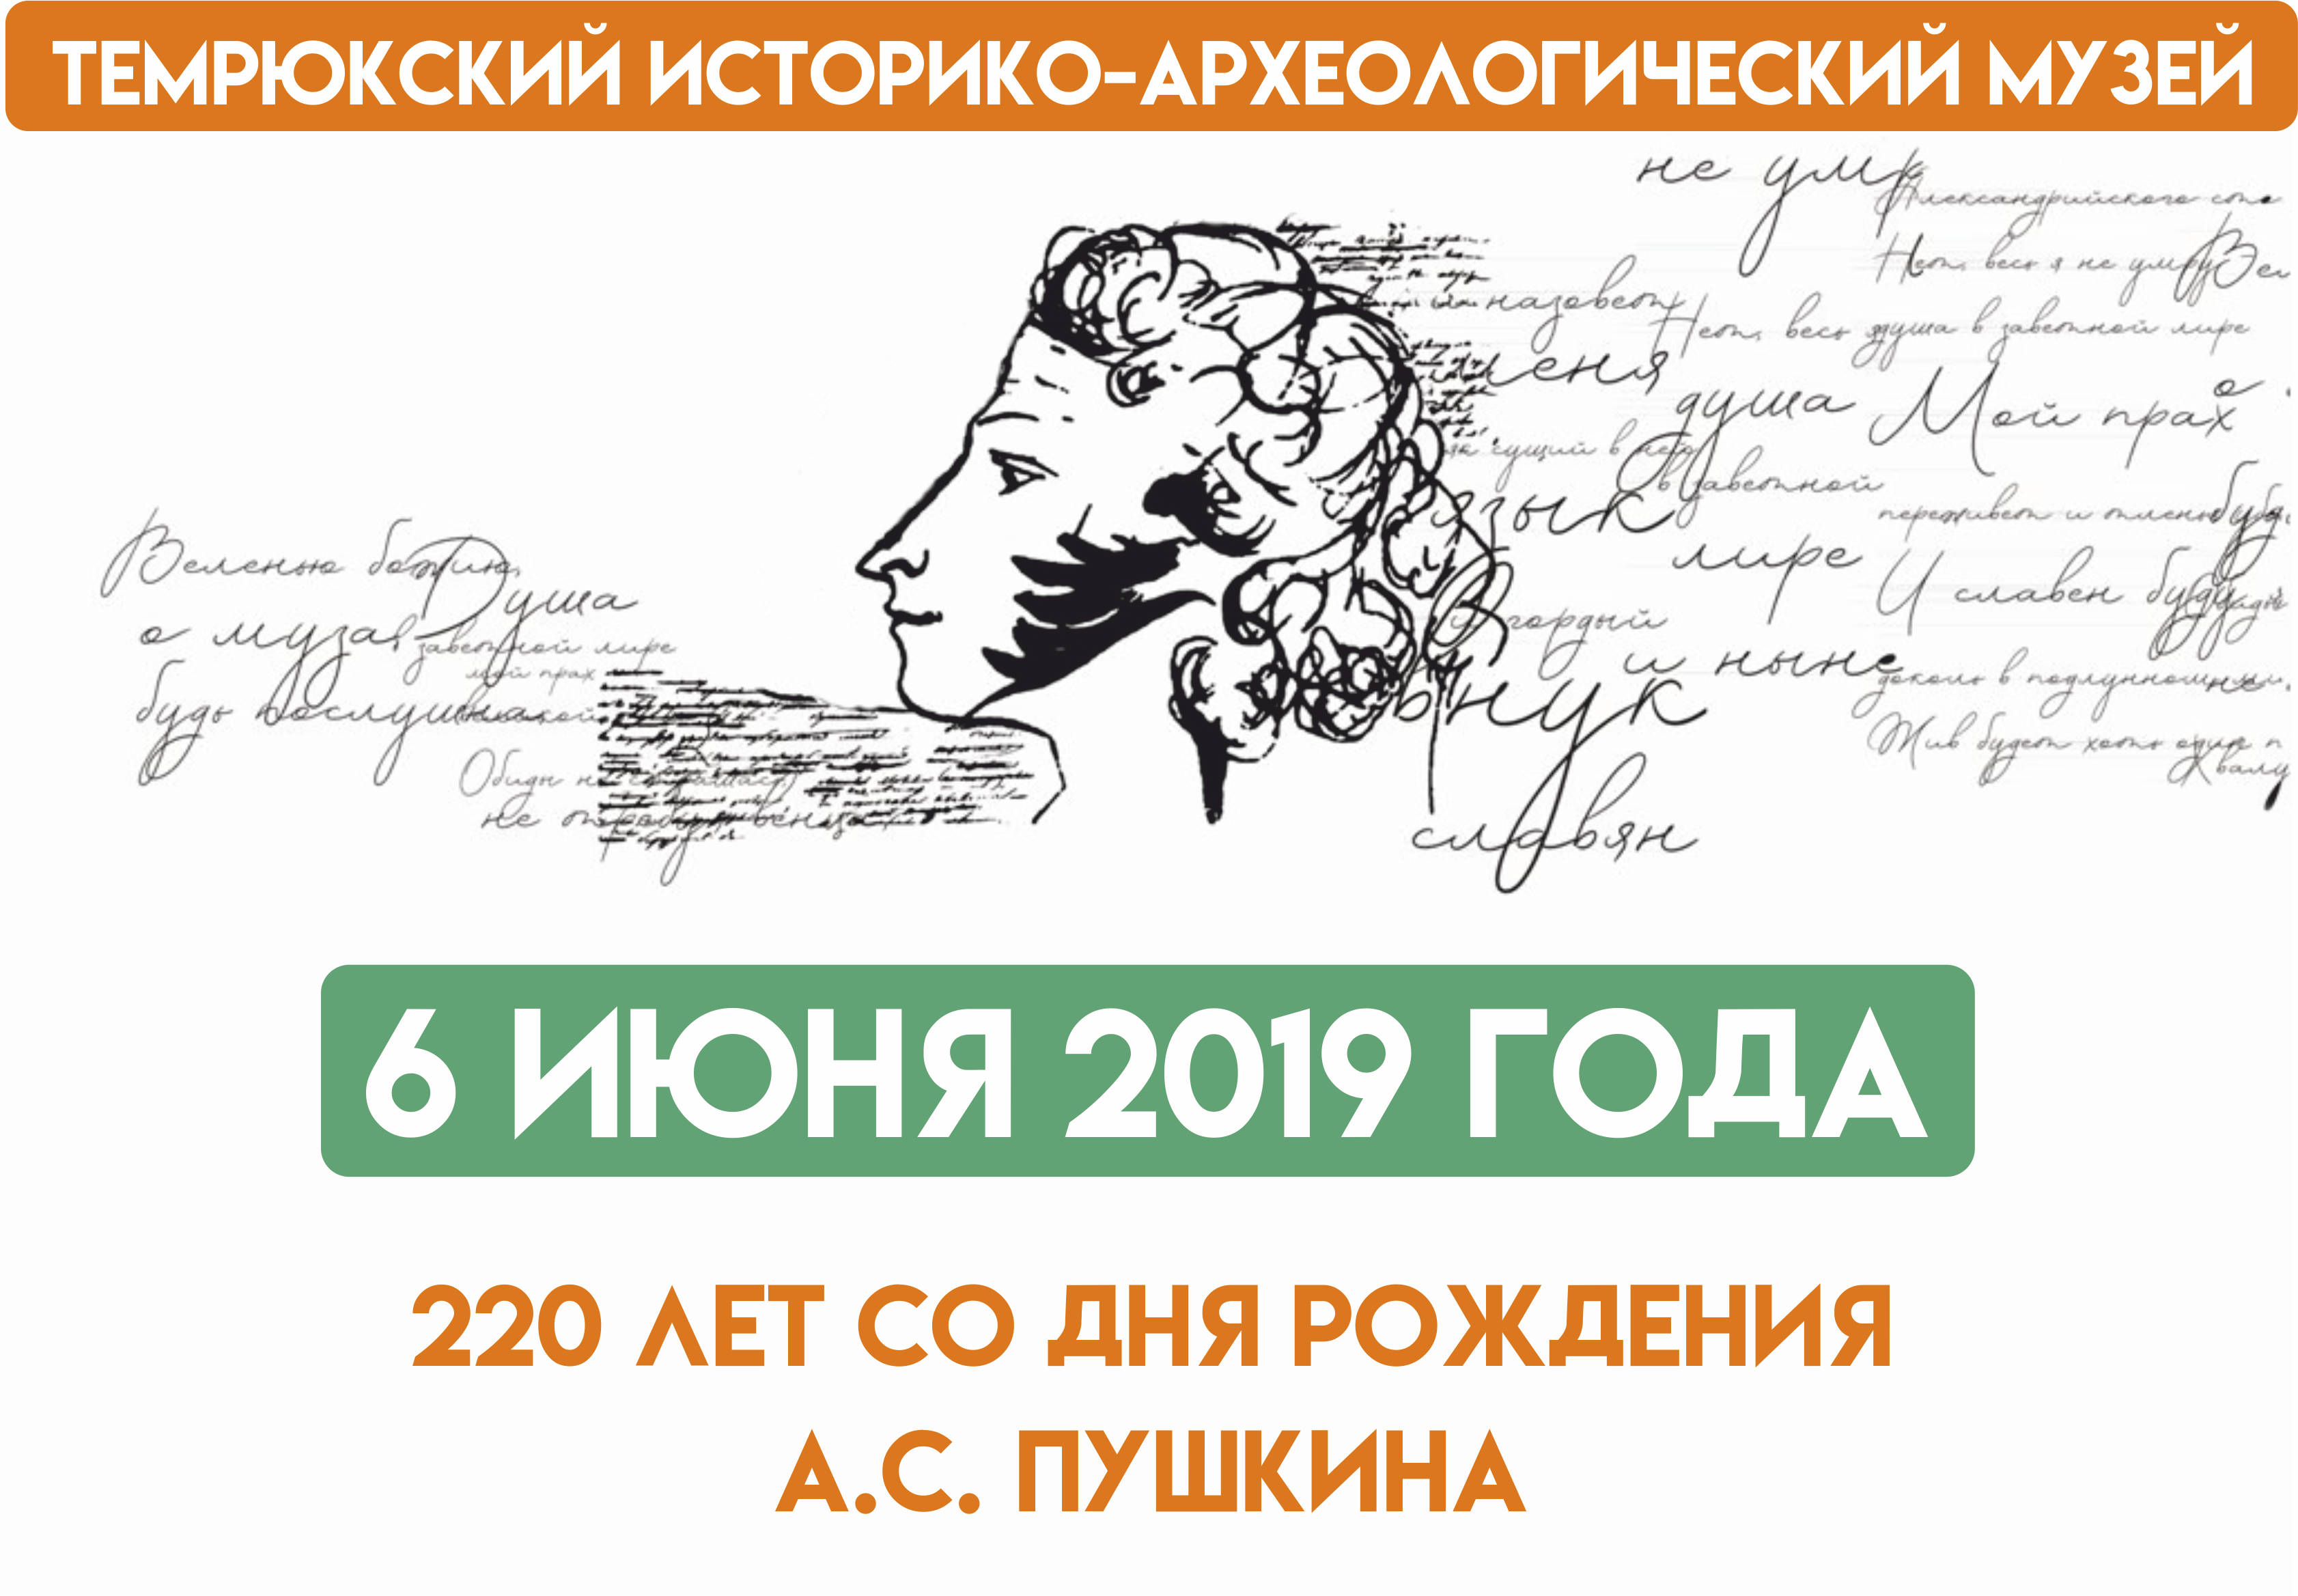 Пушкин 220 лет